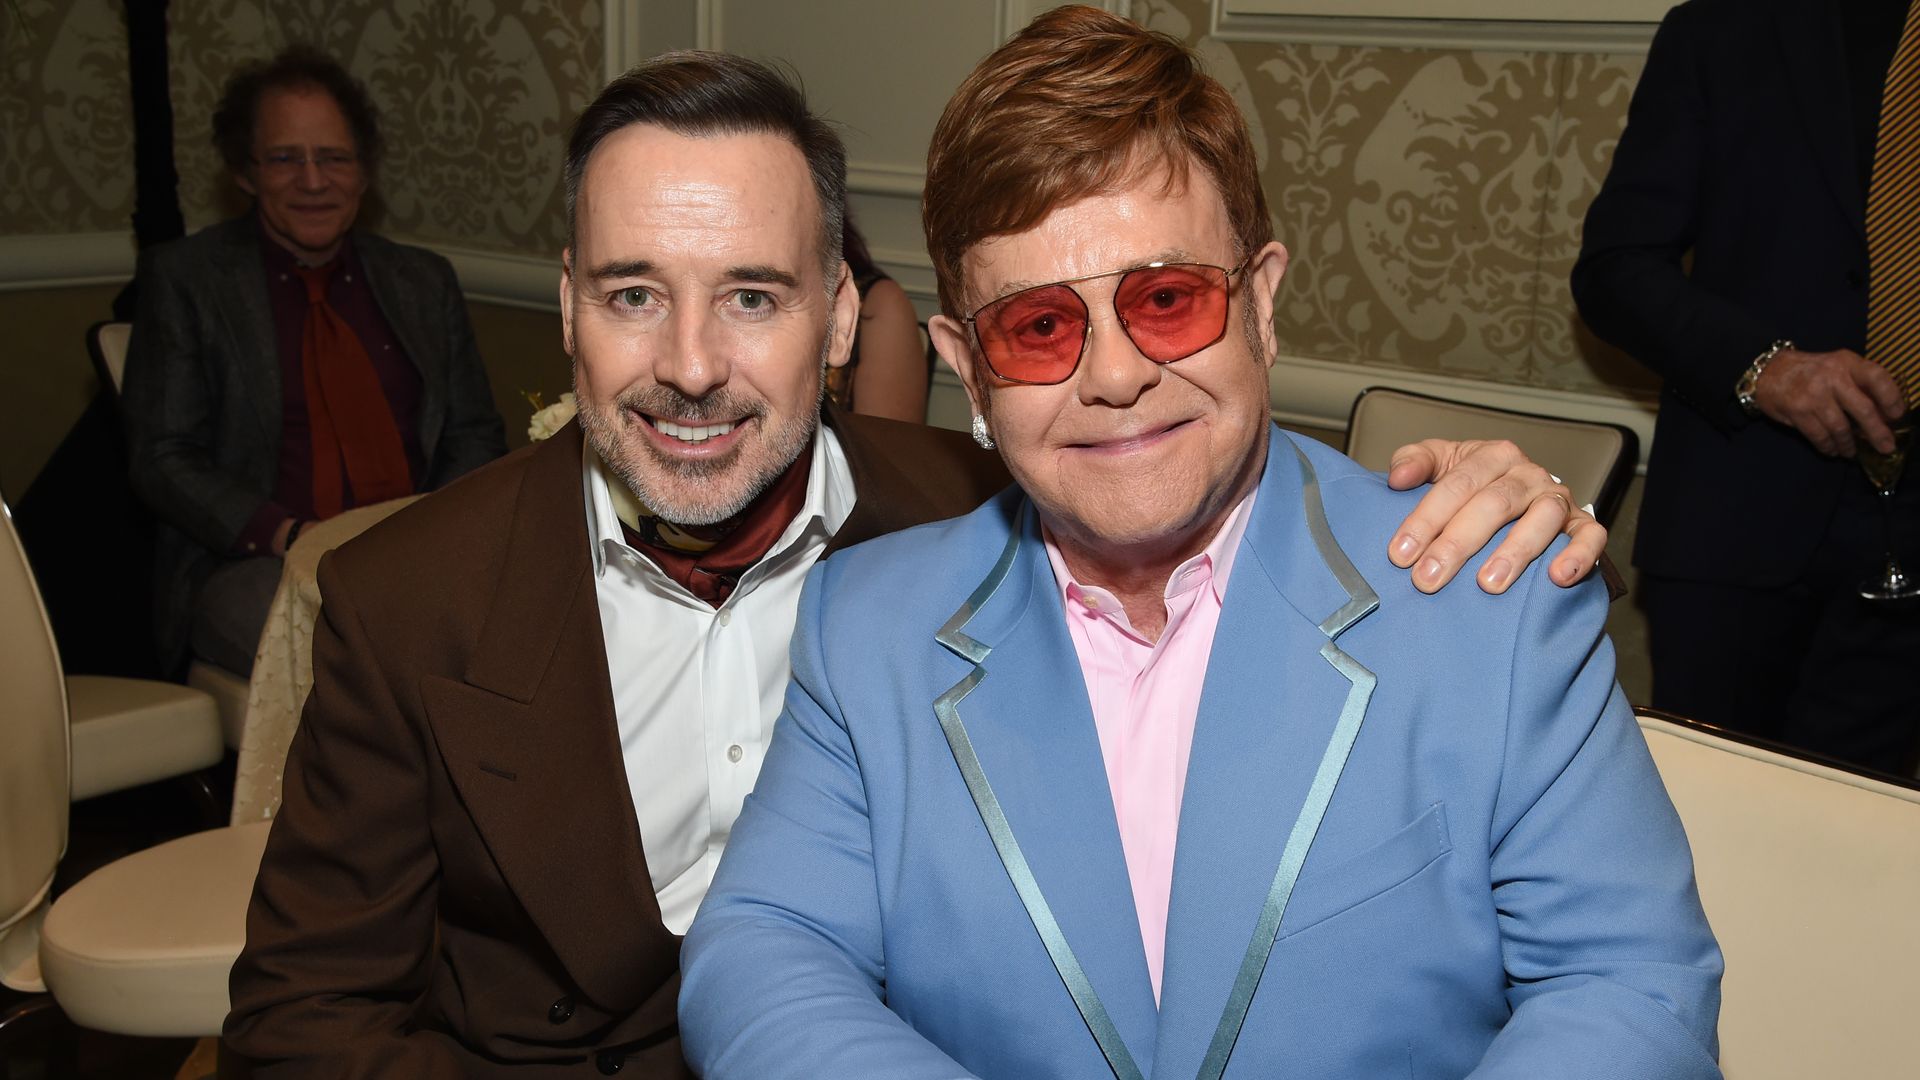 David Furnish sat with Elton John